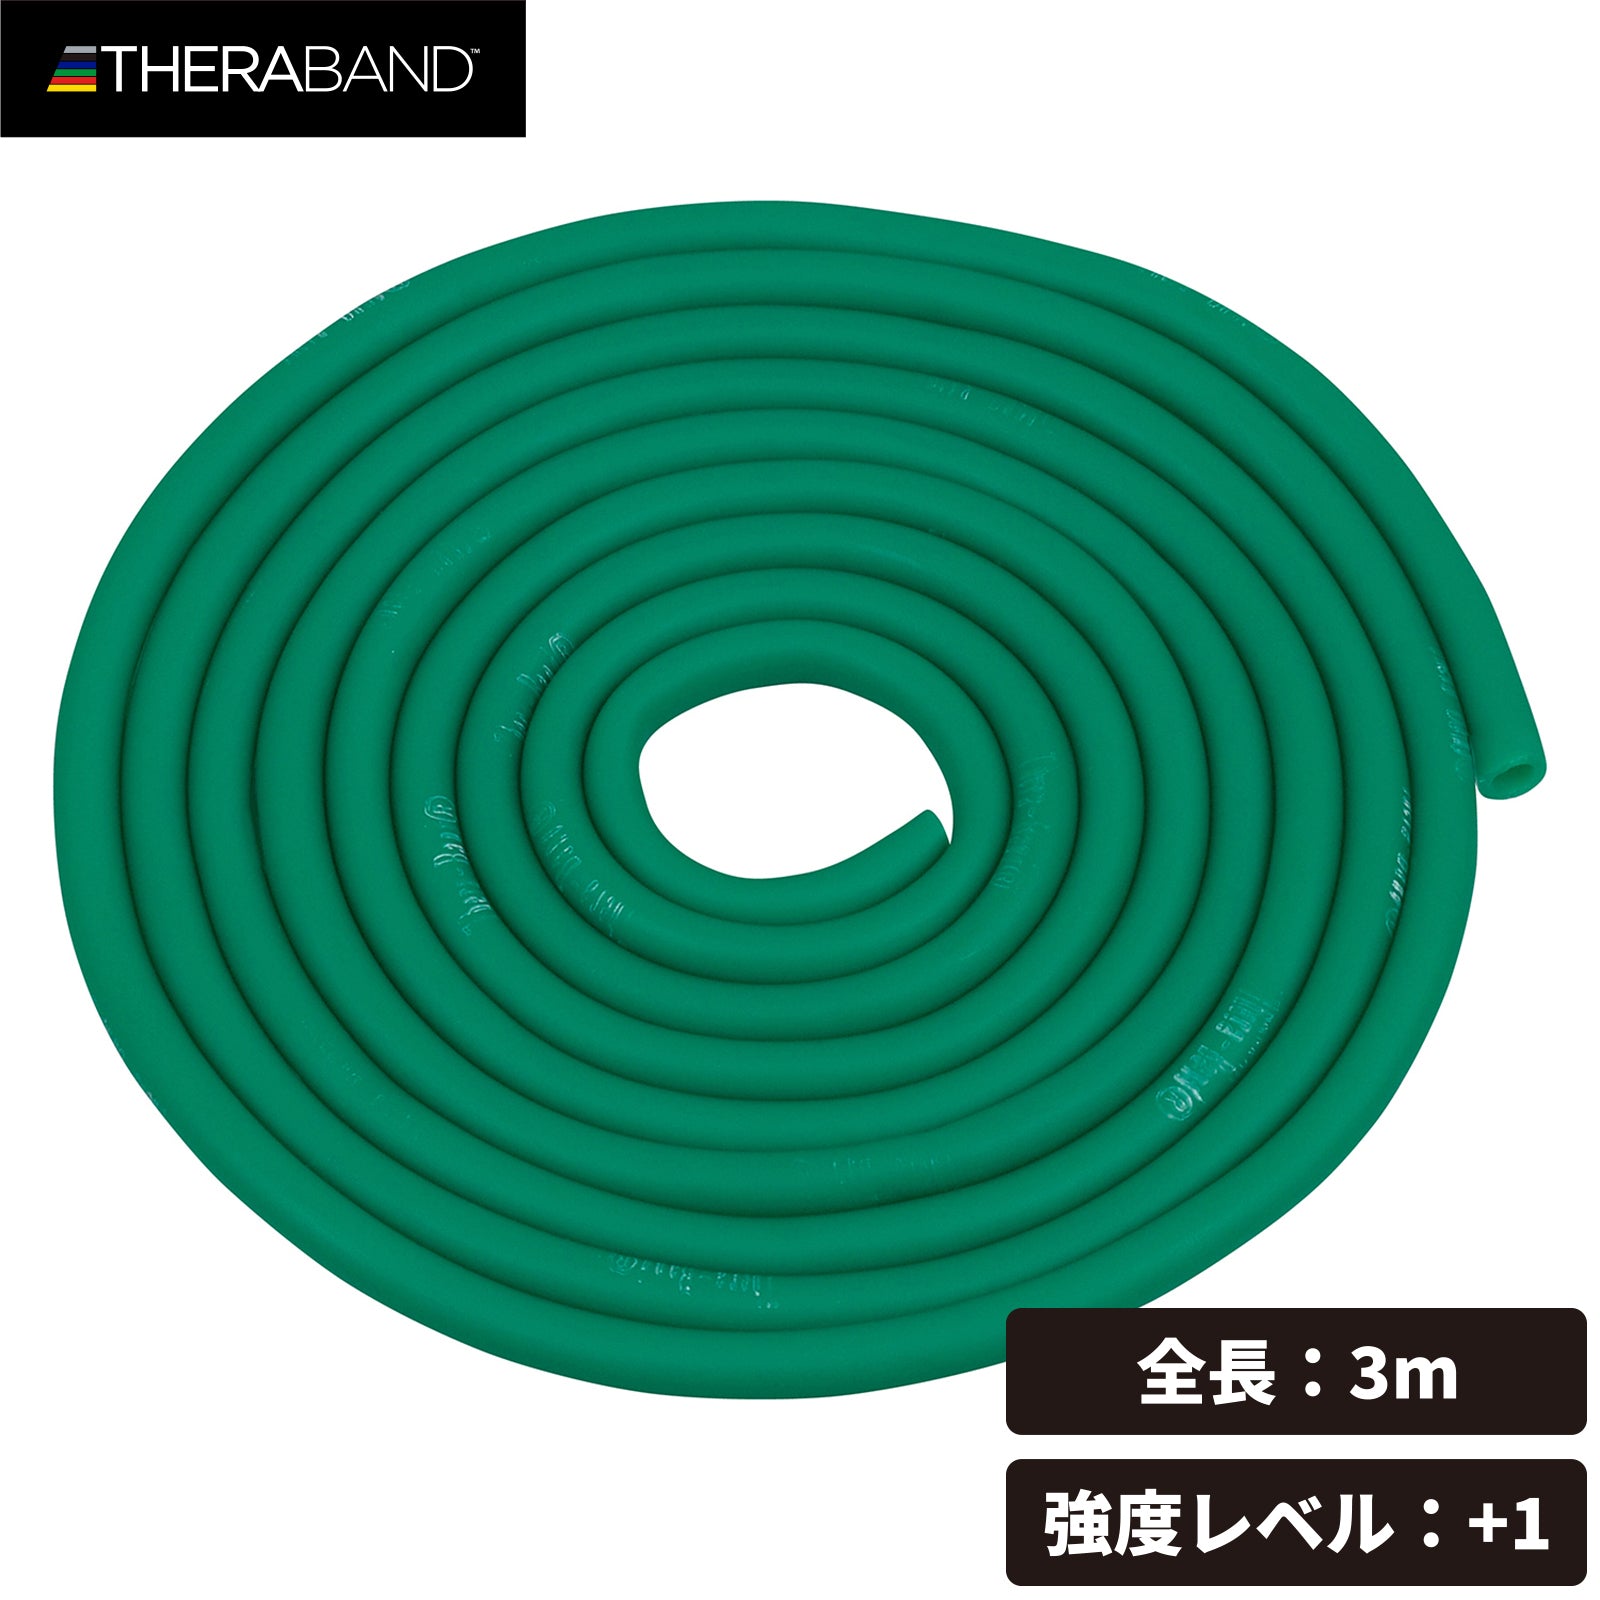 THERABAND セラバンド セラチューブ ブリスターパック  長さ3m 強度レベル+1 グリーン #TTB-13